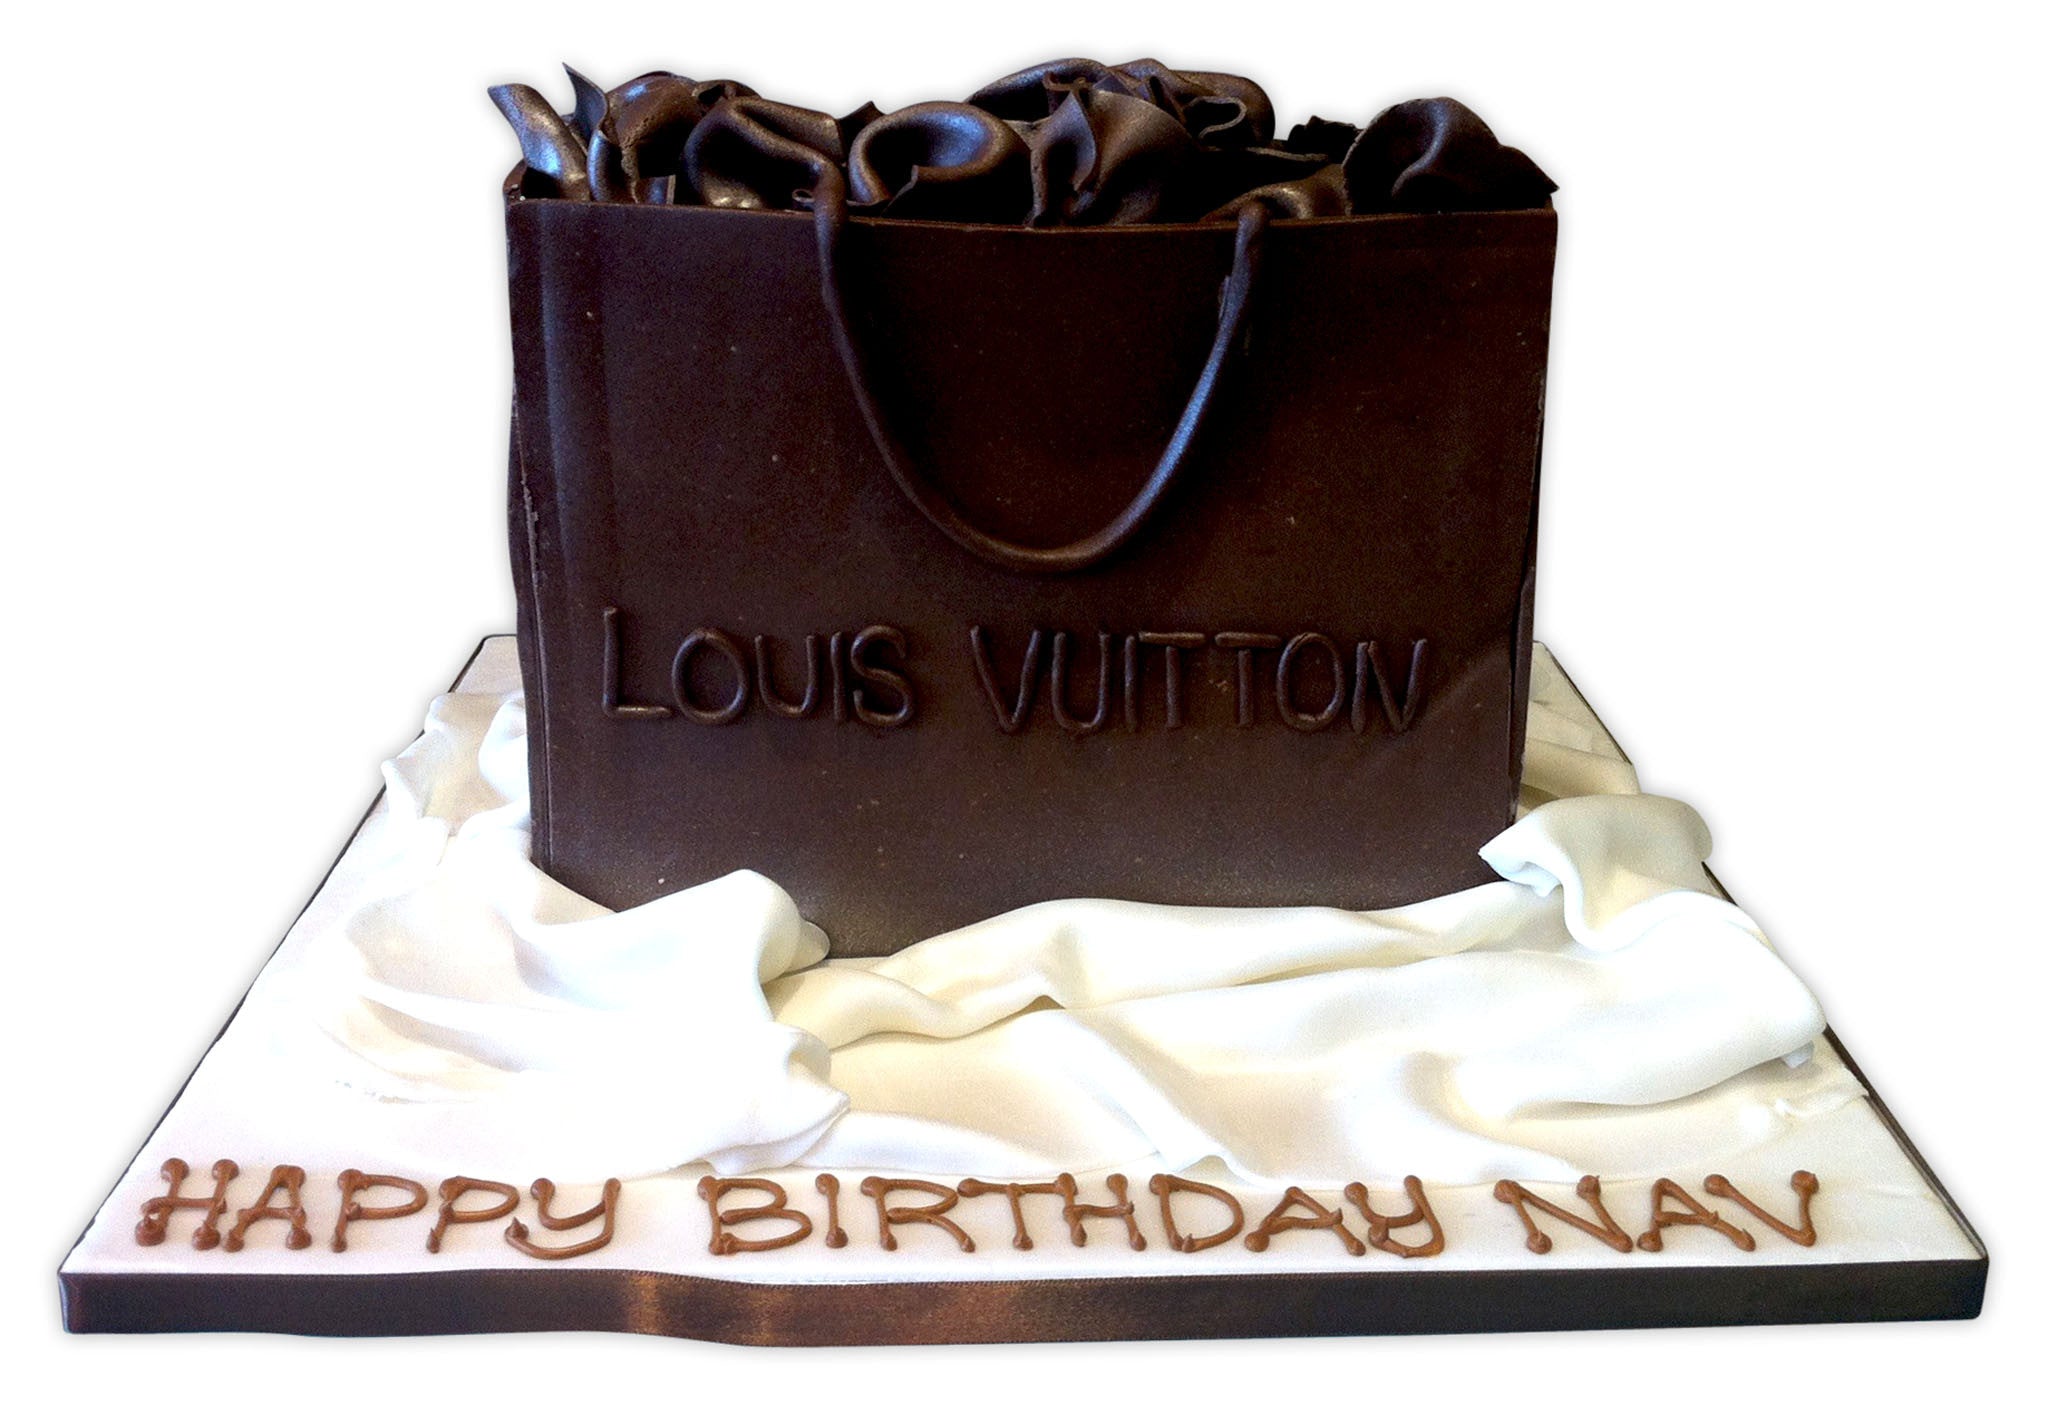 Louis Vuitton handbag cake – Little Black Hen